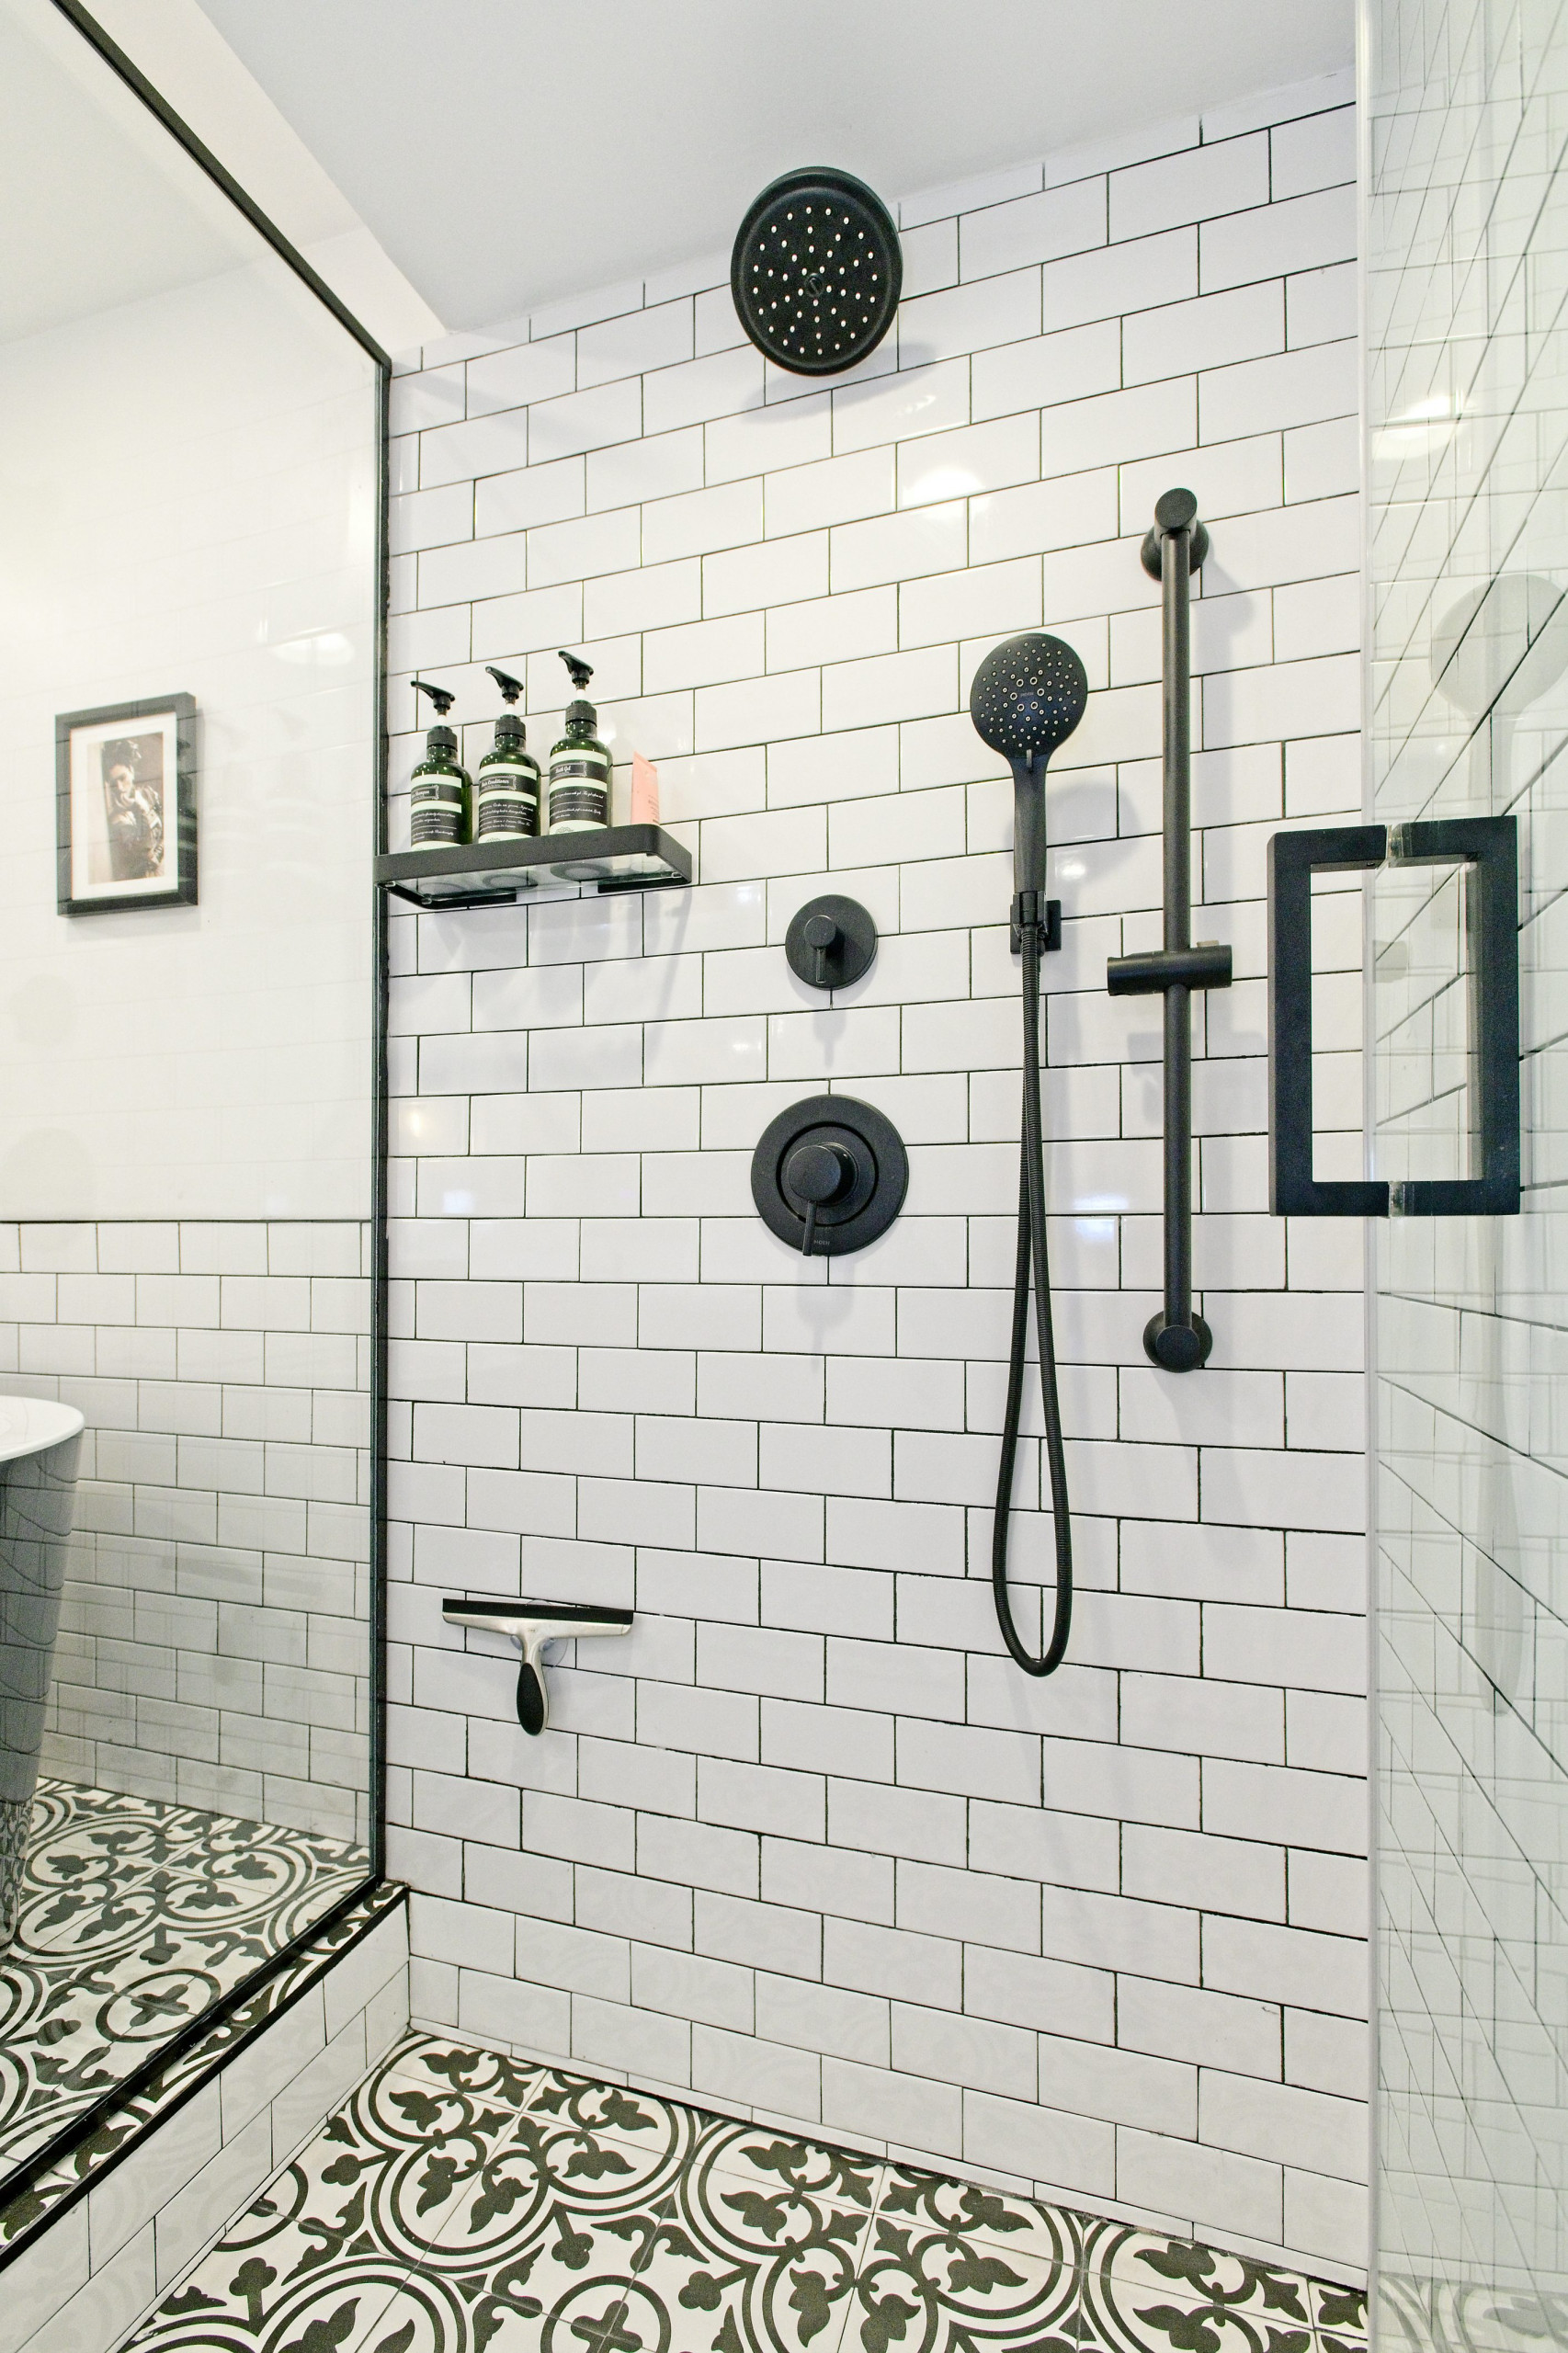 Clean, sleek shower system